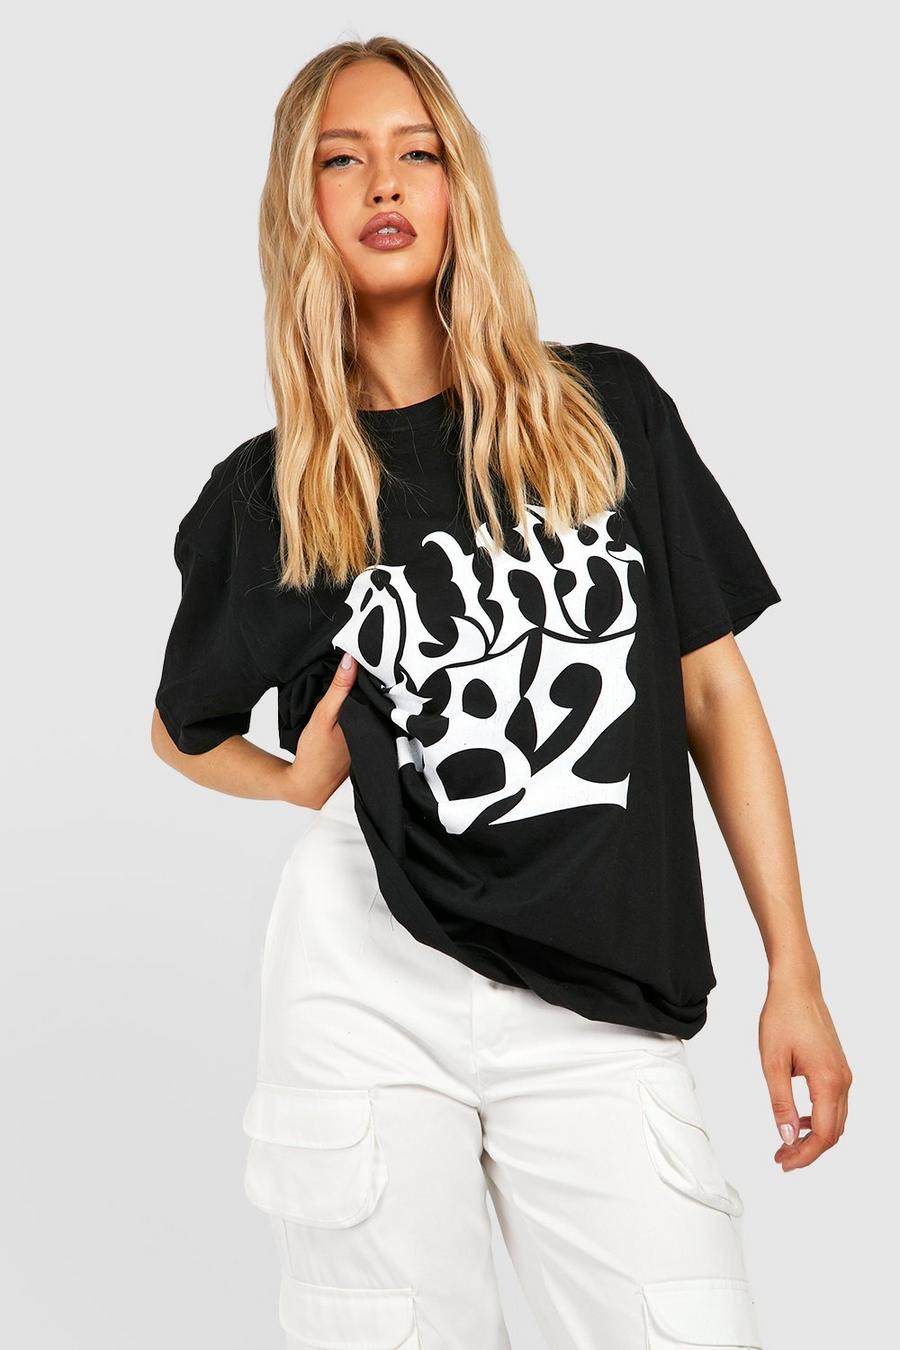 Black negro Tall Oversized Blink 182 License T-shirt